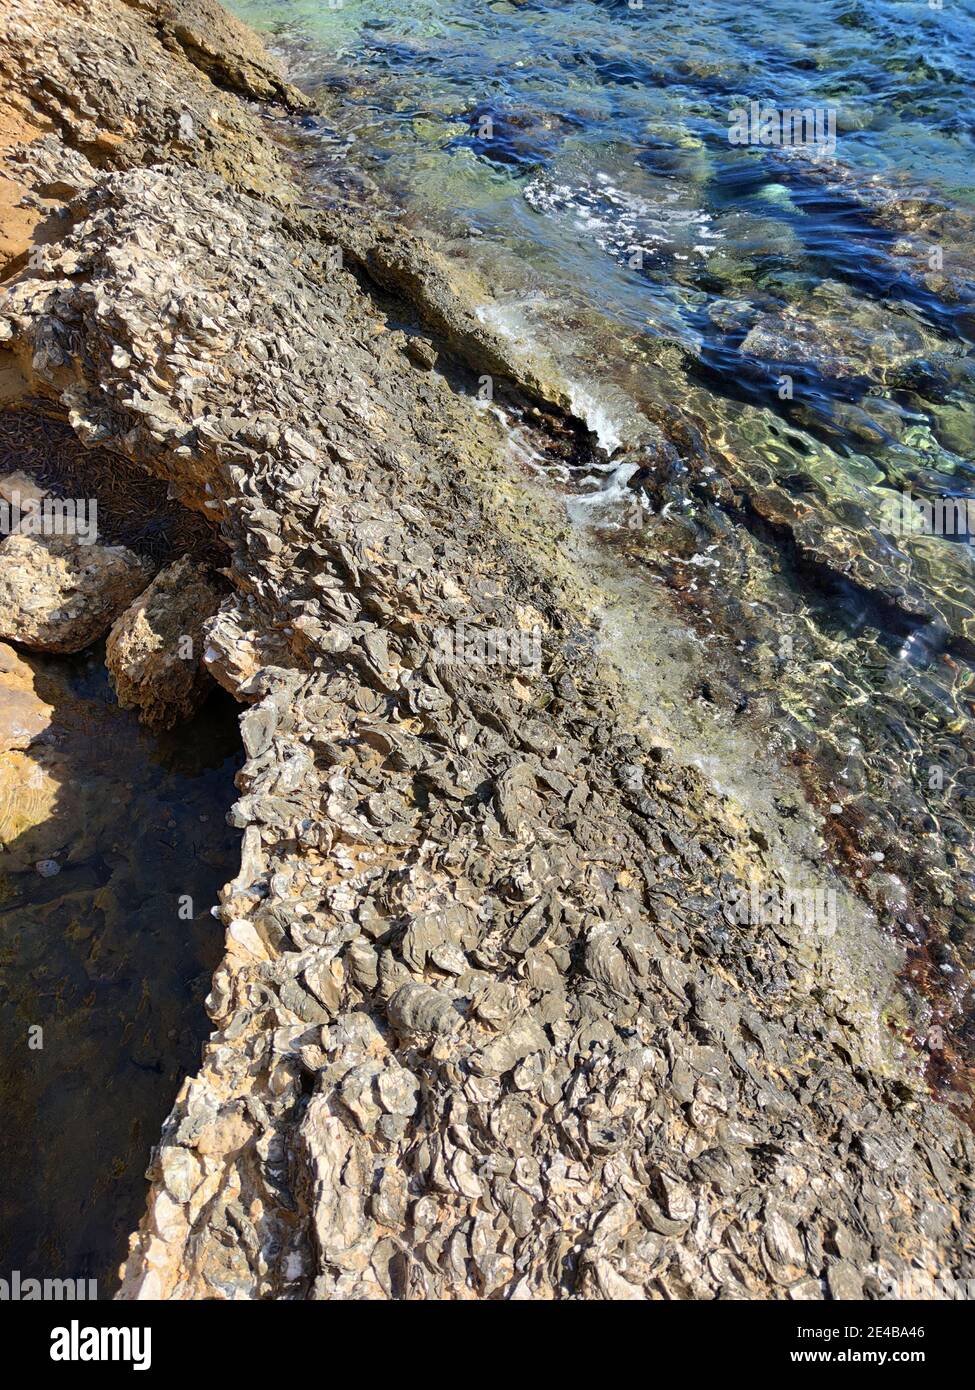 Les falaises de Mitikas sont une caractéristique géologique. Des milliers de coquilles pétrifiées couvrent les roches de grès, la mer Ionienne, le centre de la Grèce Banque D'Images